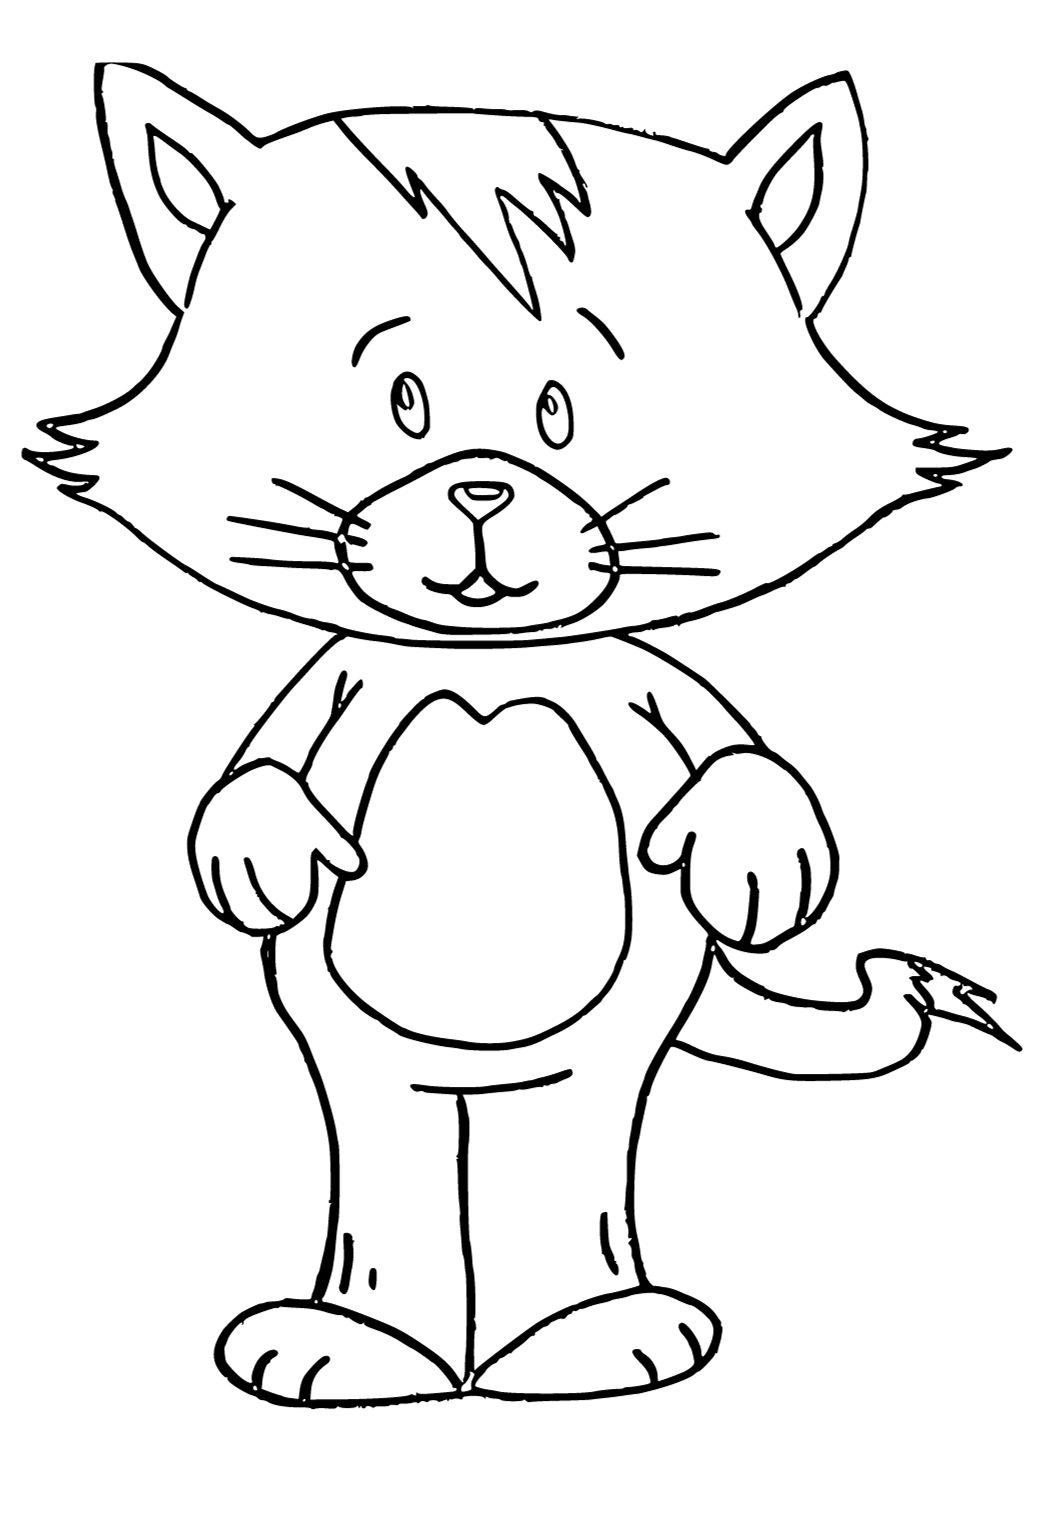 ฟรีพิมพ์ได้ การ์ตูนแมว ความคาดหวัง ระบายสี สำหรับผู้ใหญ่และเด็ก - Lystok.Com